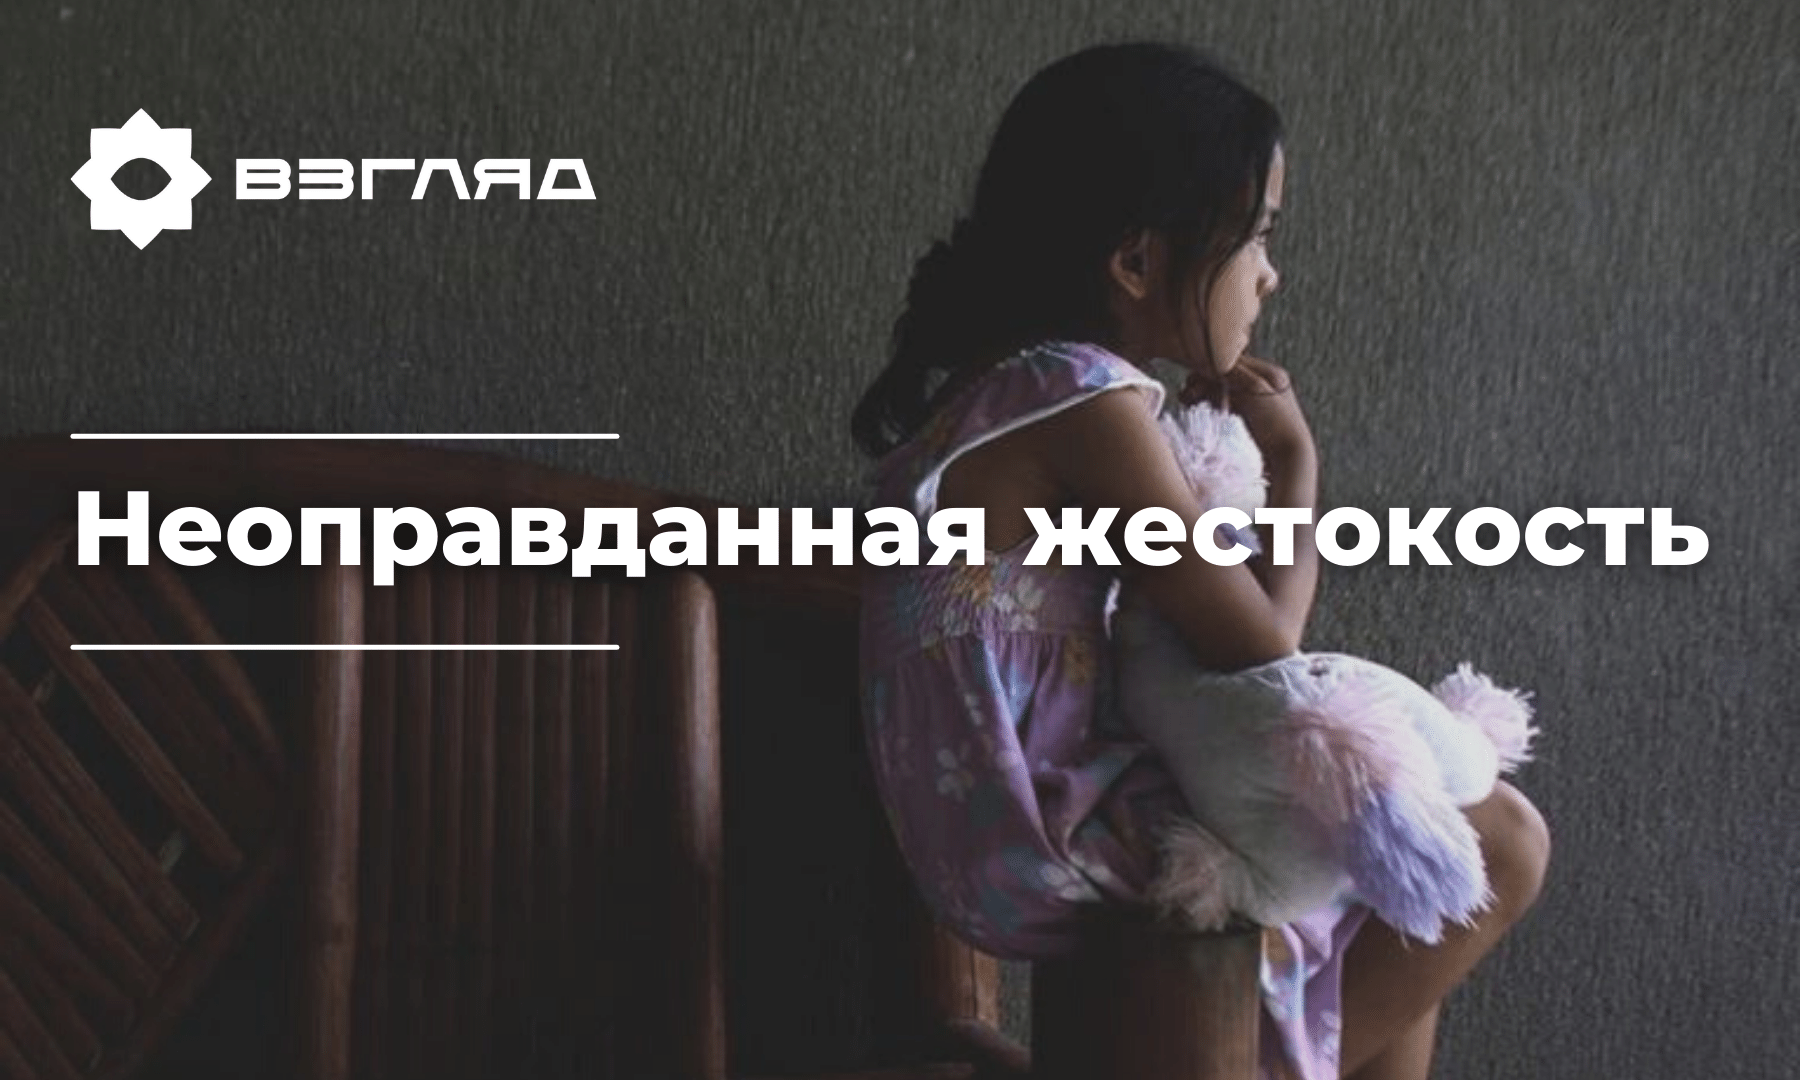 Cотрудник детского дома в Ташкенте регулярно избивал и издевался над одним из своих подопечных